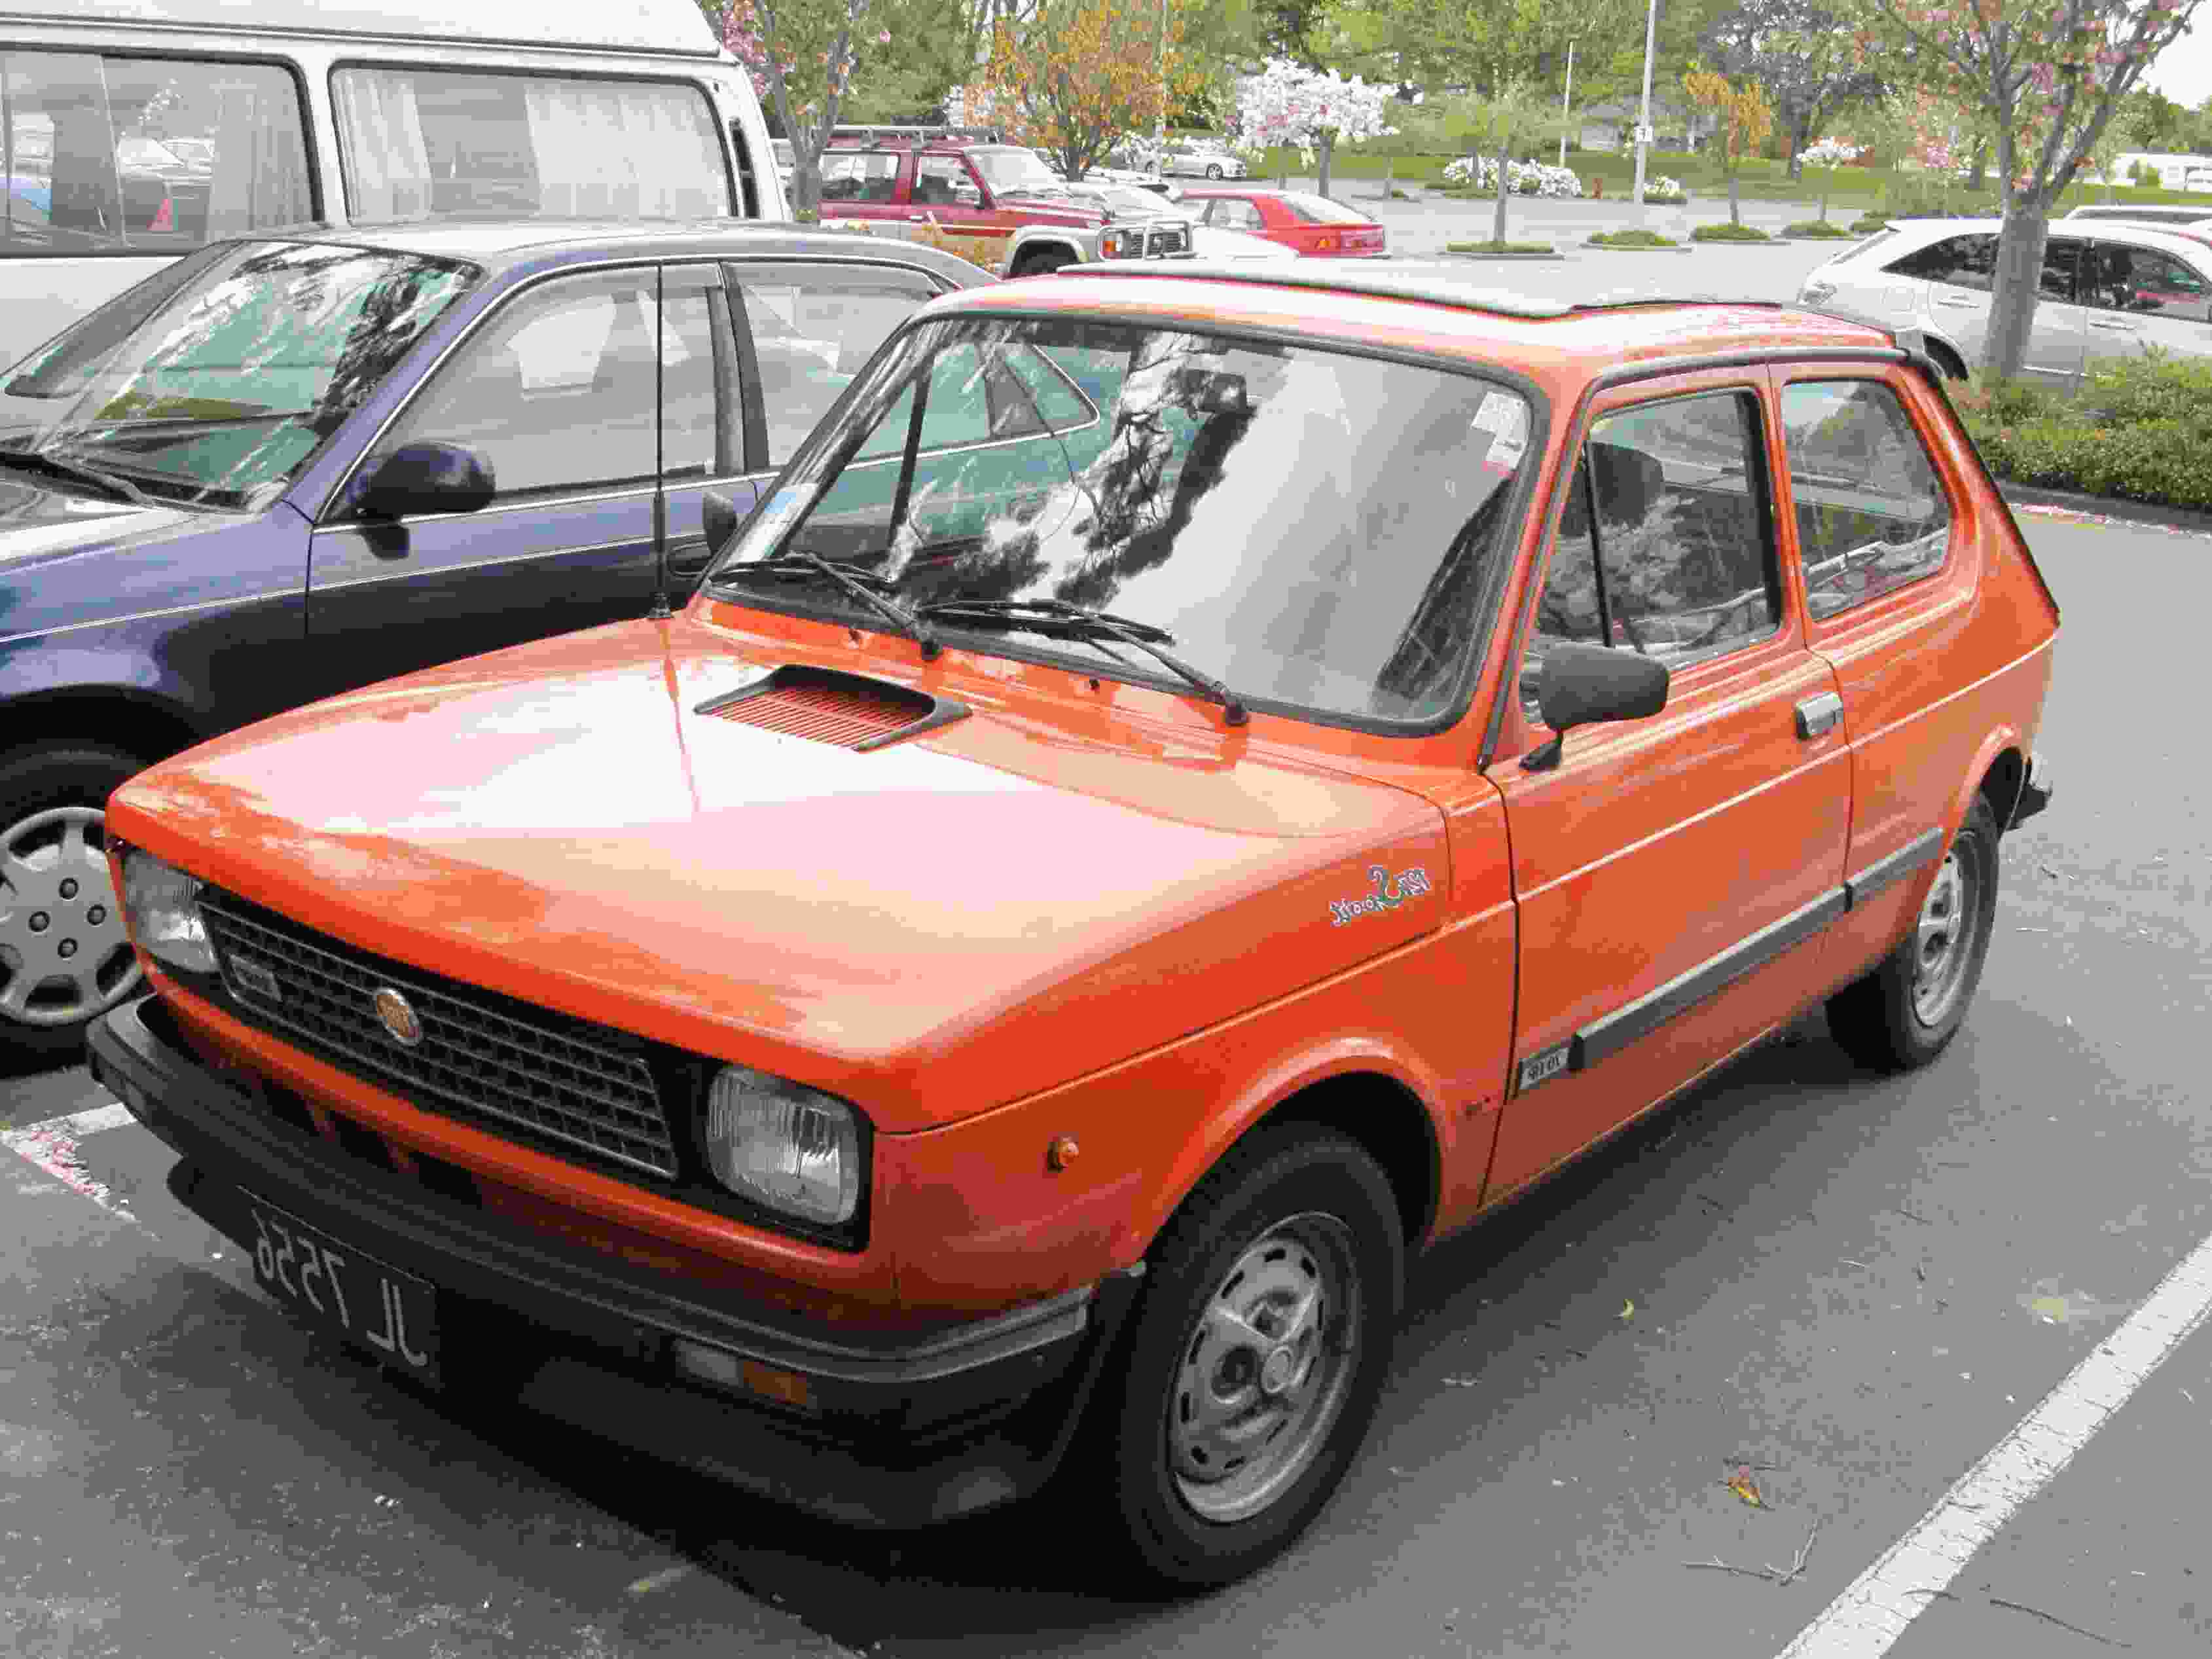 Fiat 127 Sport gebraucht kaufen! 2 St. bis 70 günstiger